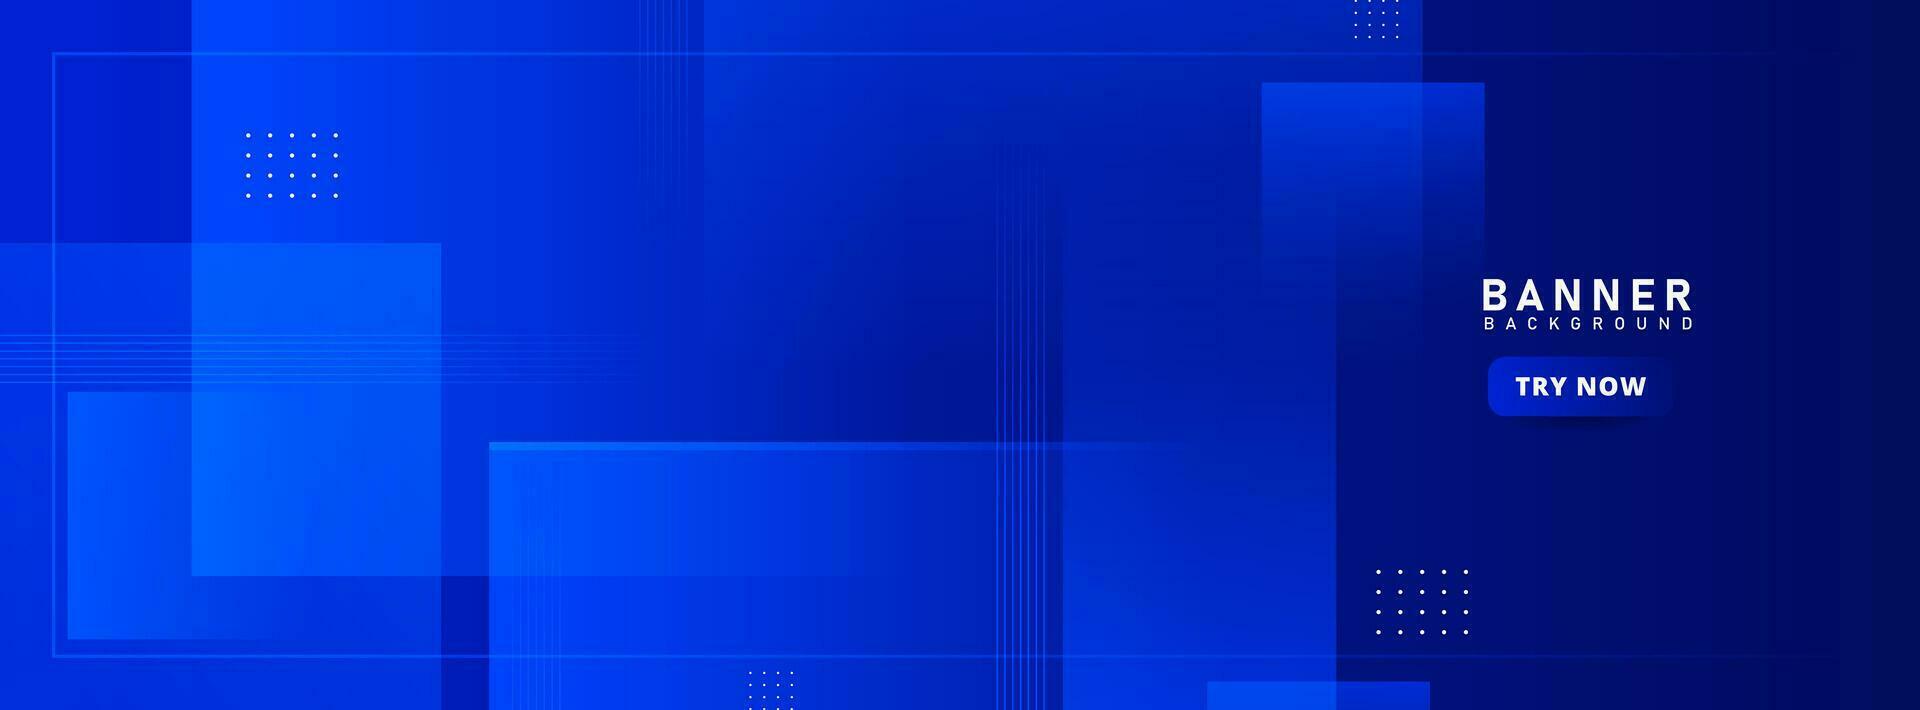 Banner Hintergrund. Blau Gradation. Muster. abstrakt vektor